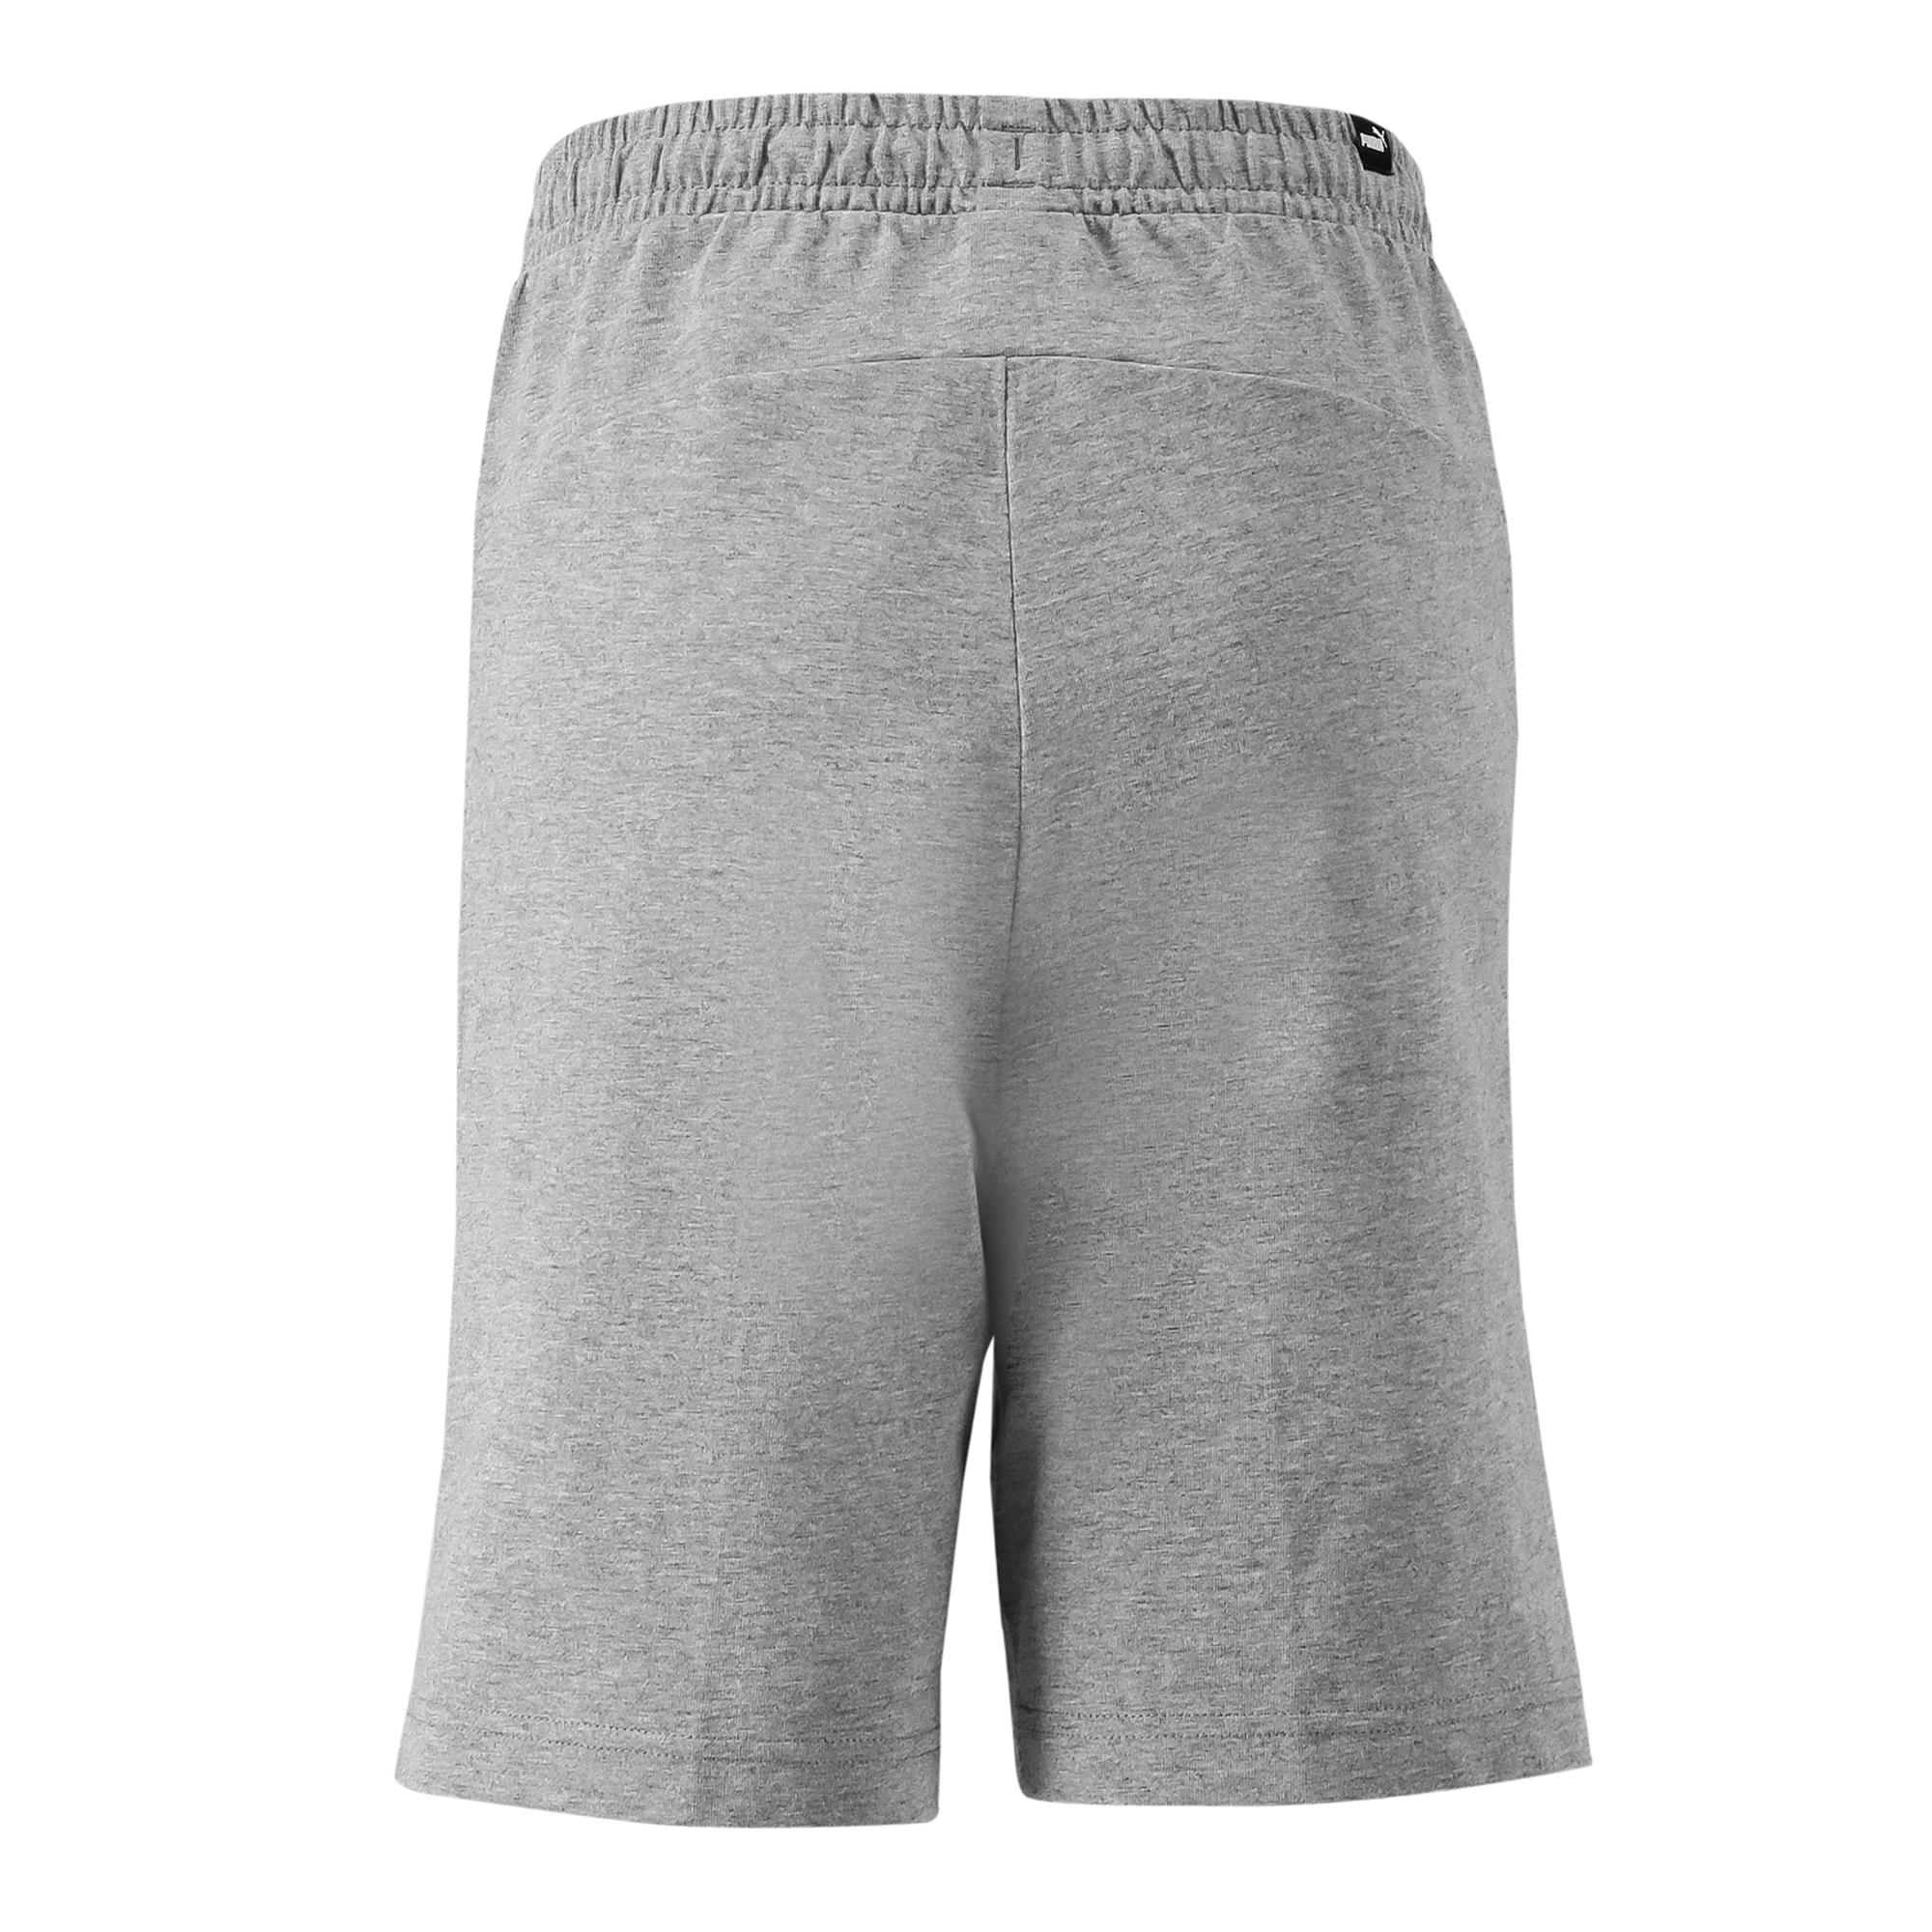 Boys' Regular Shorts - Grey 4/6